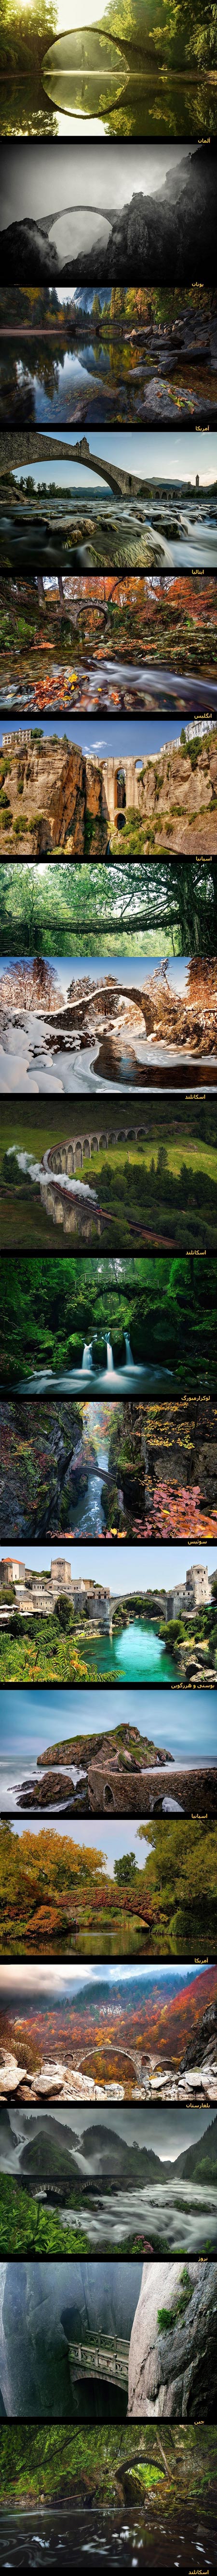 جادویی ترین پل های بی نظیر در دل طبیعت (تصاویر)